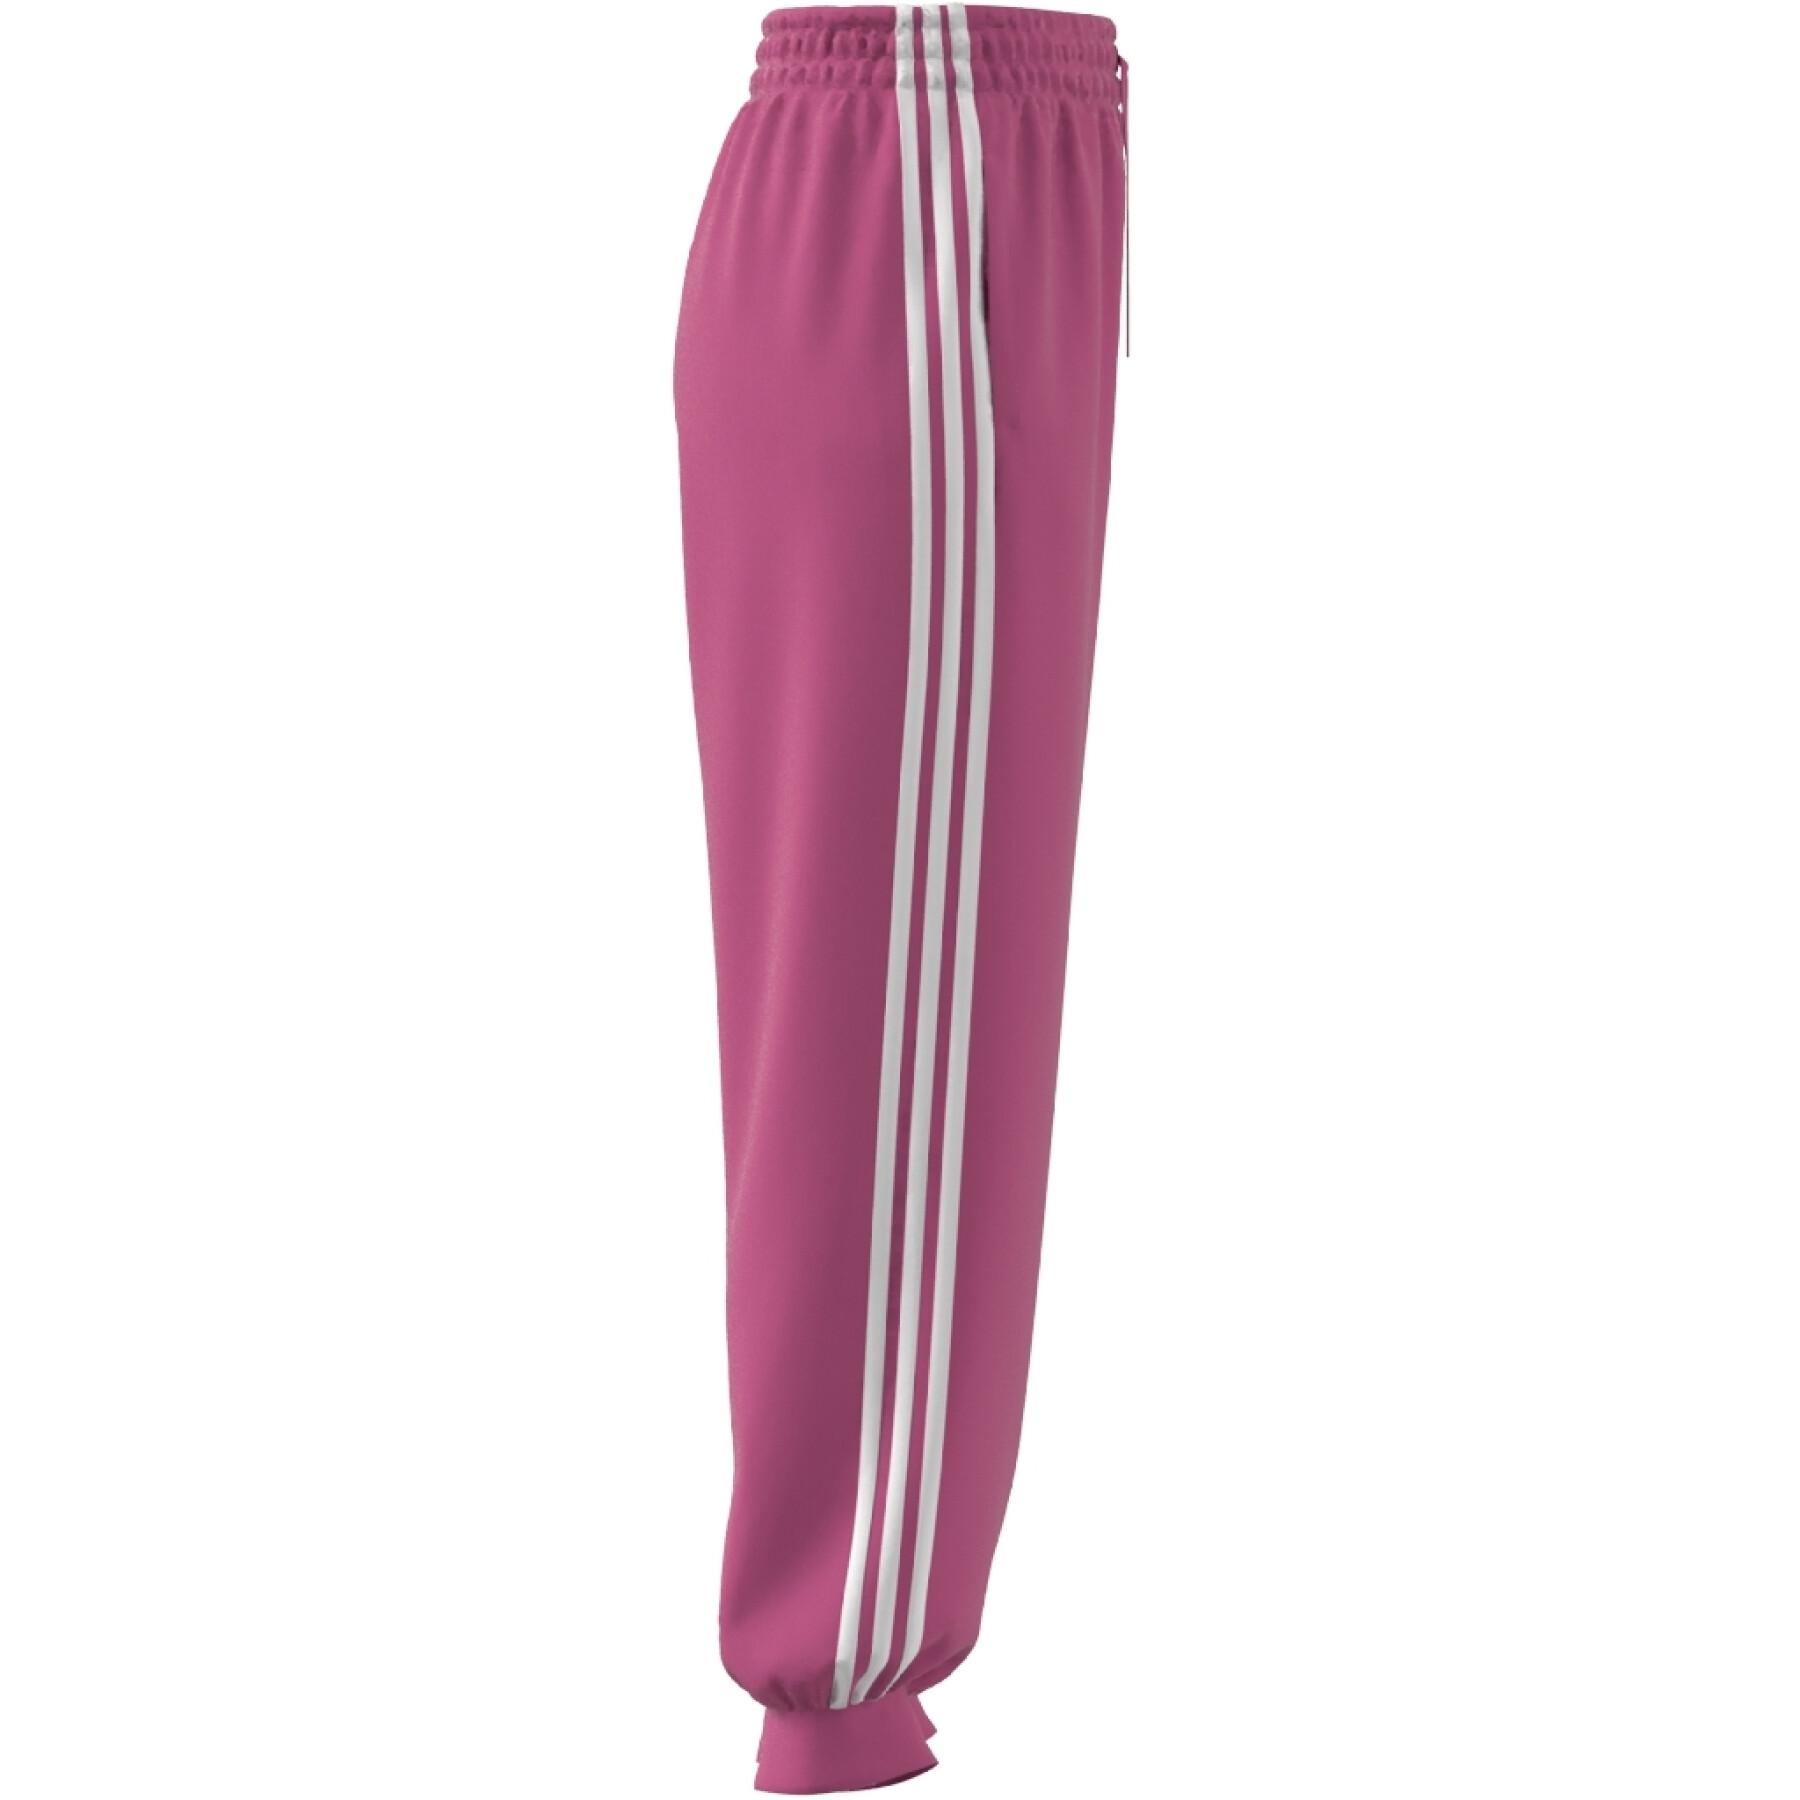 Jogging polar holgado para mujer adidas Essentials 3-Stripes